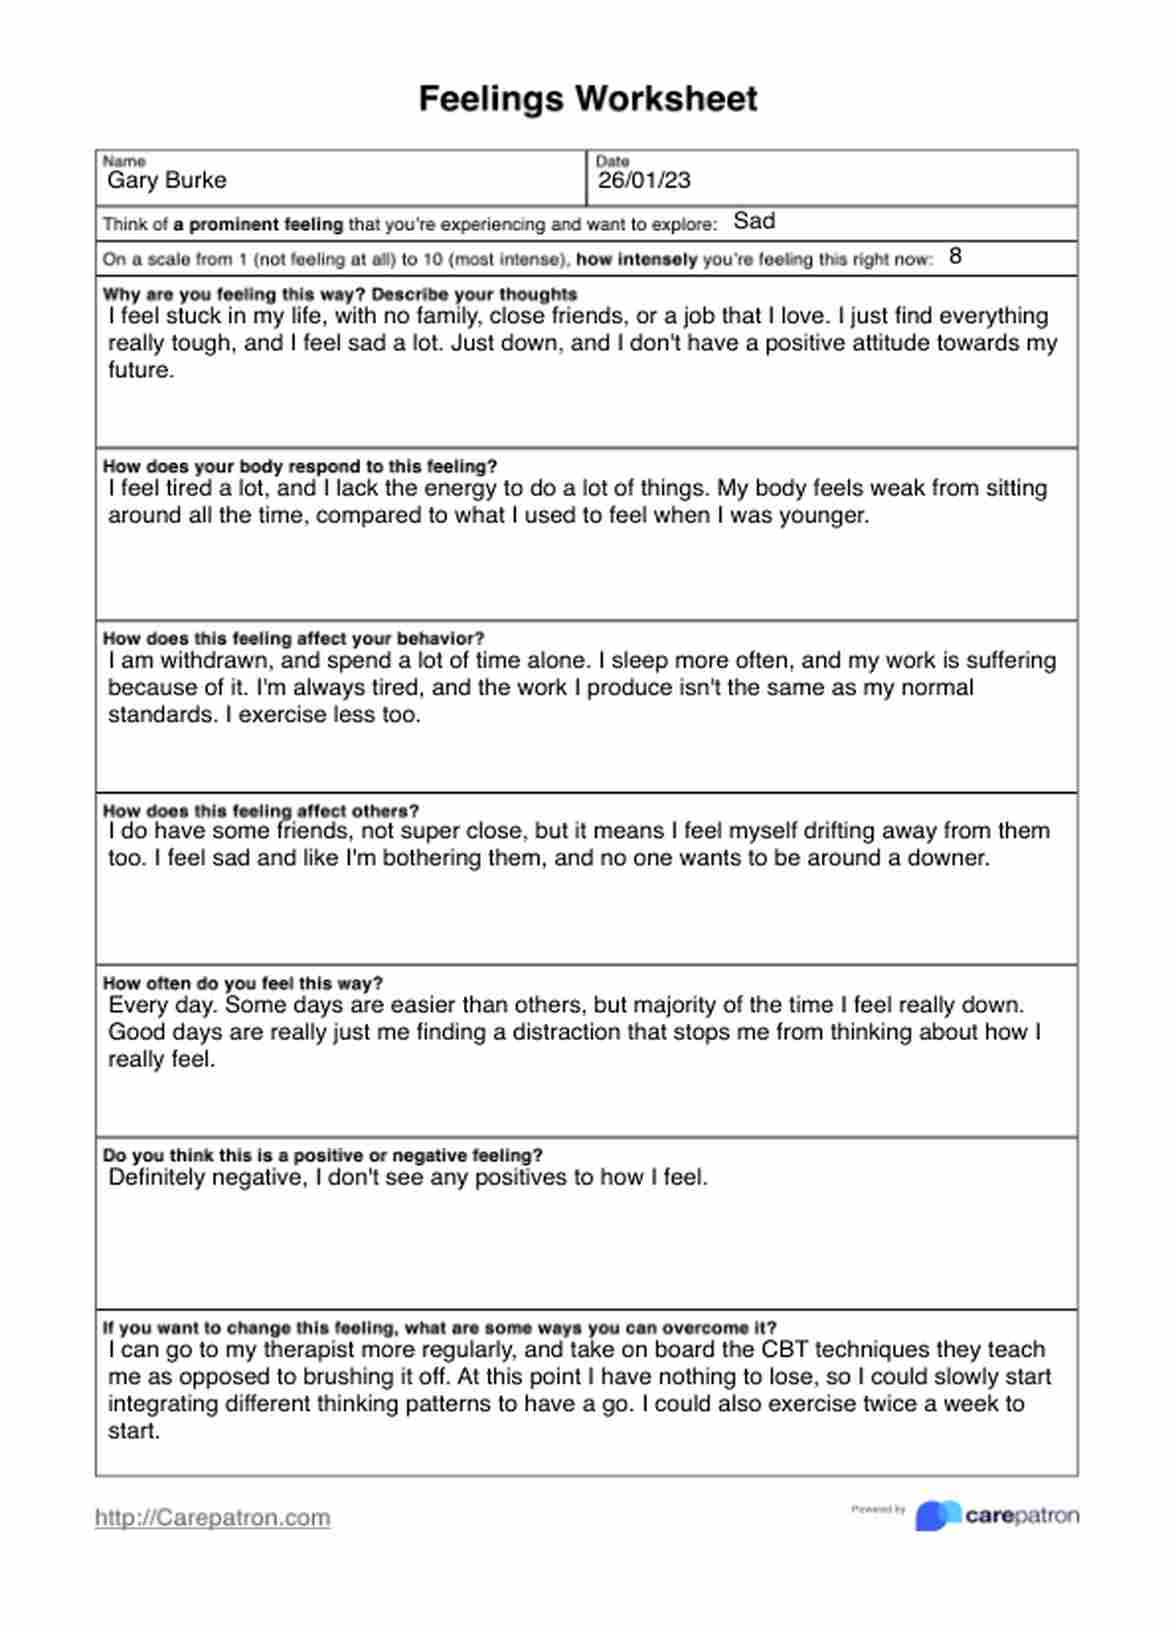 Feelings Worksheets PDF Example